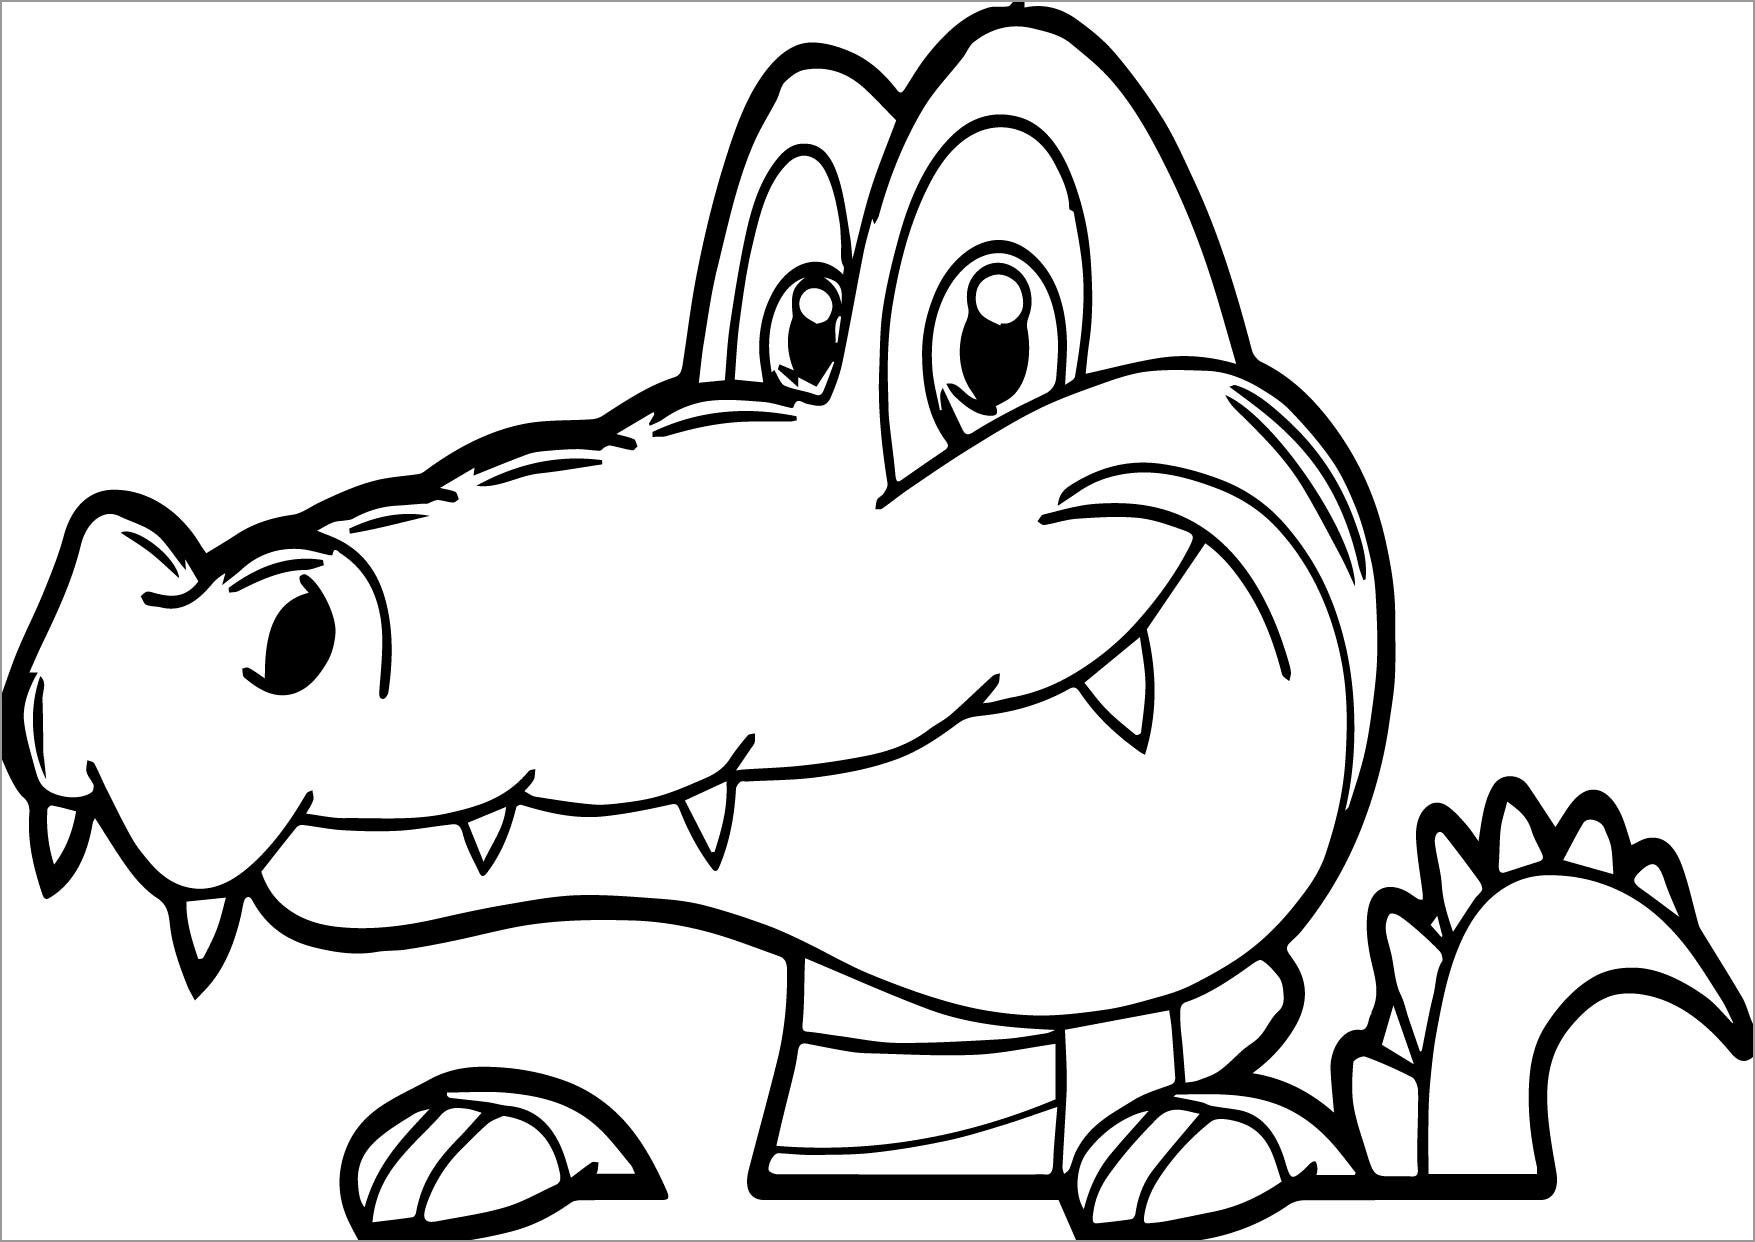 Cartoon Crocodile Face Coloring Page